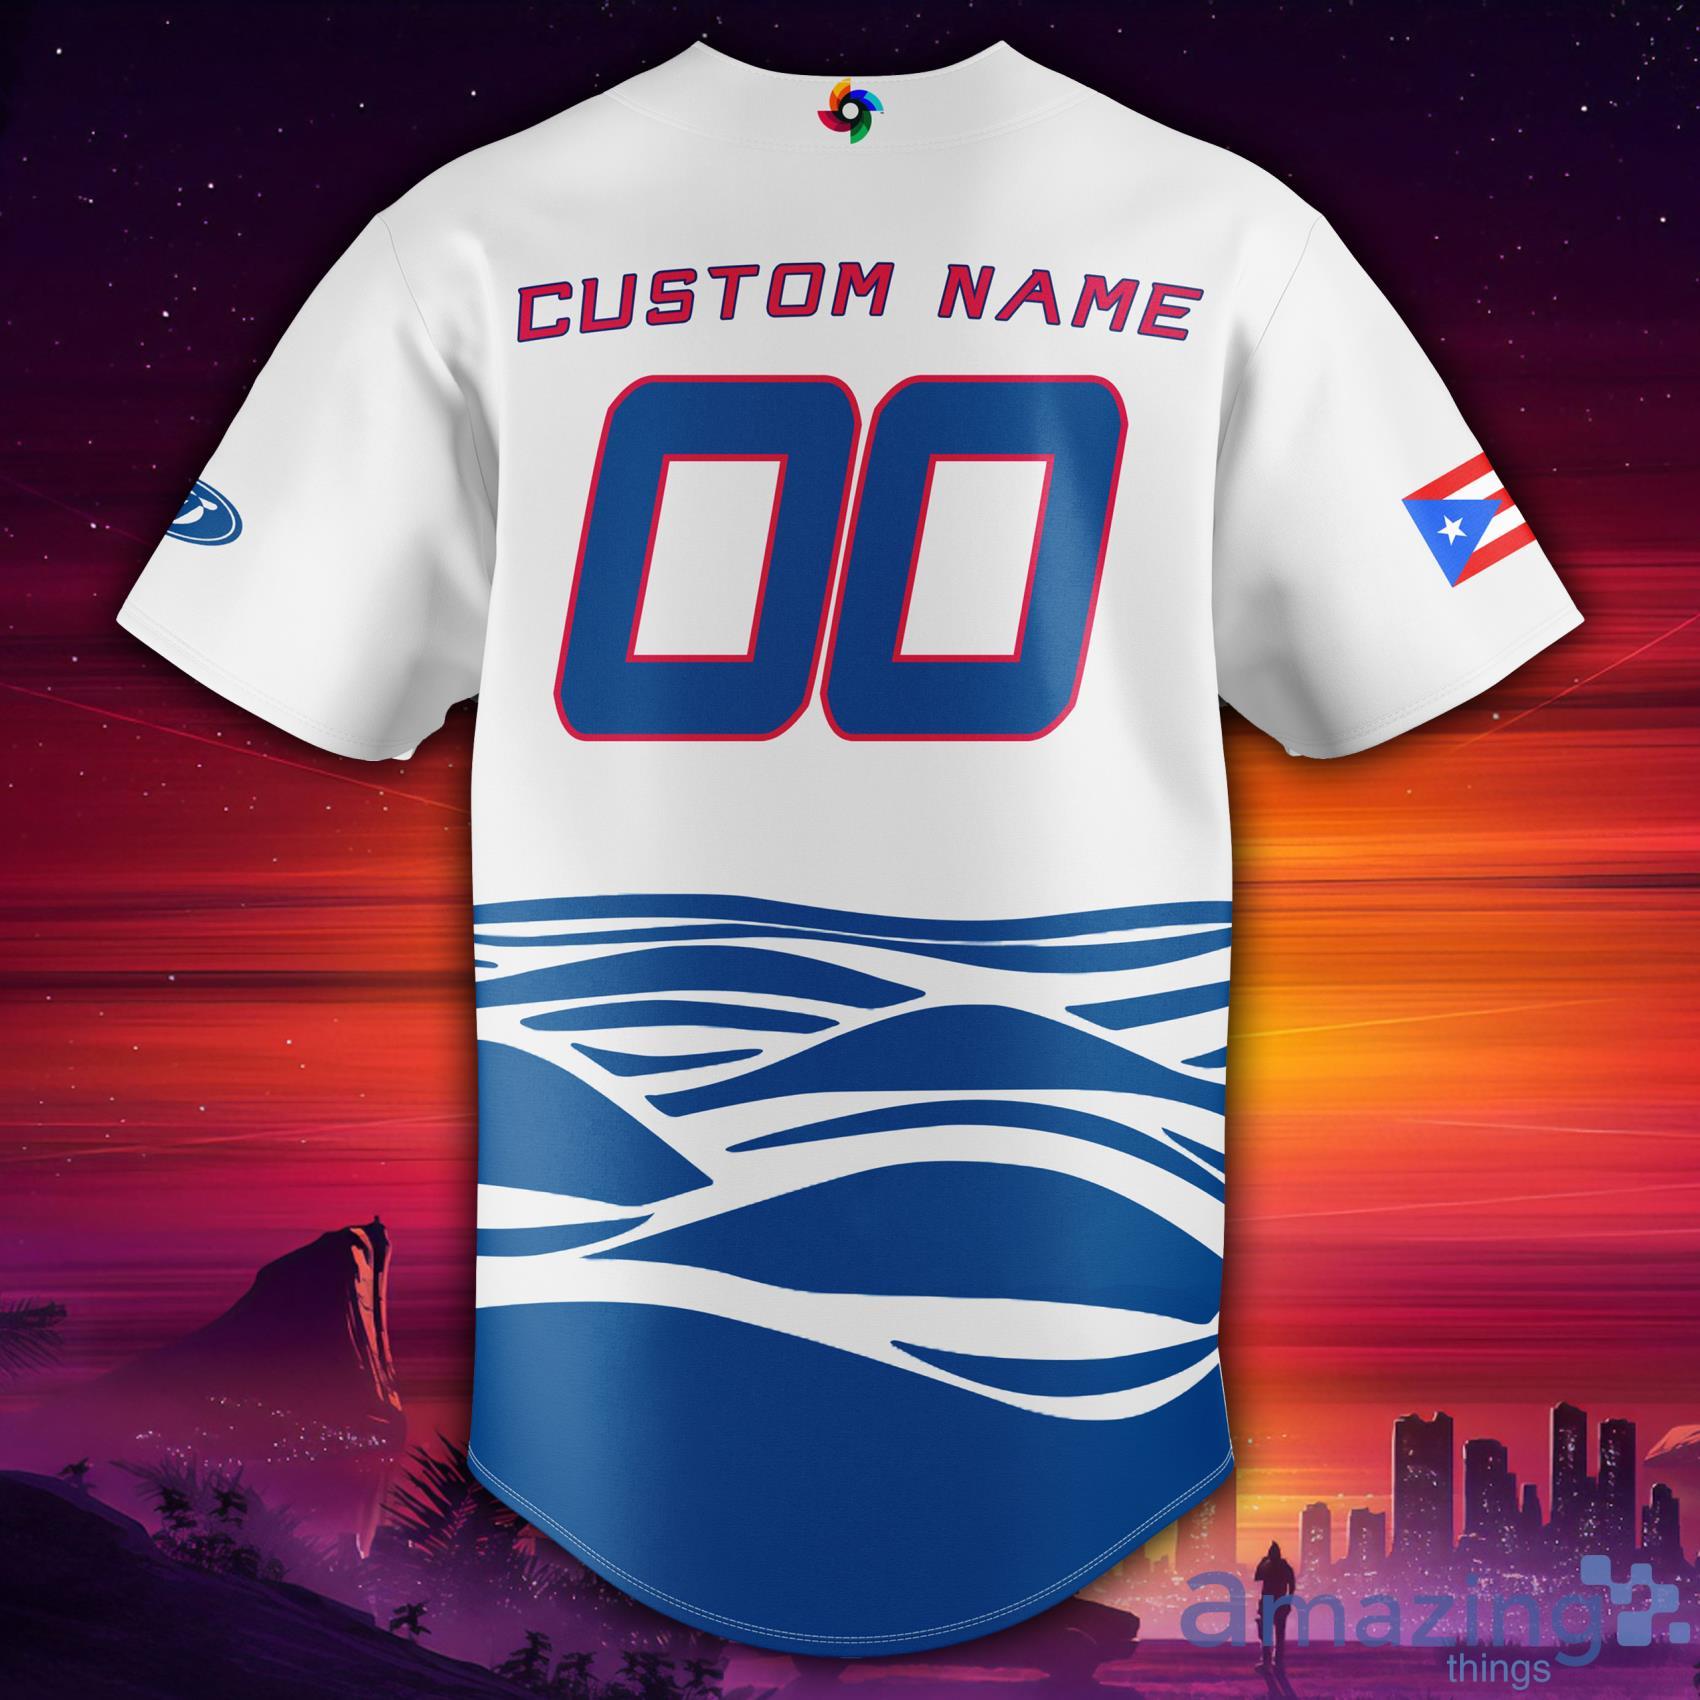 world baseball classic 2023 jerseys puerto rico